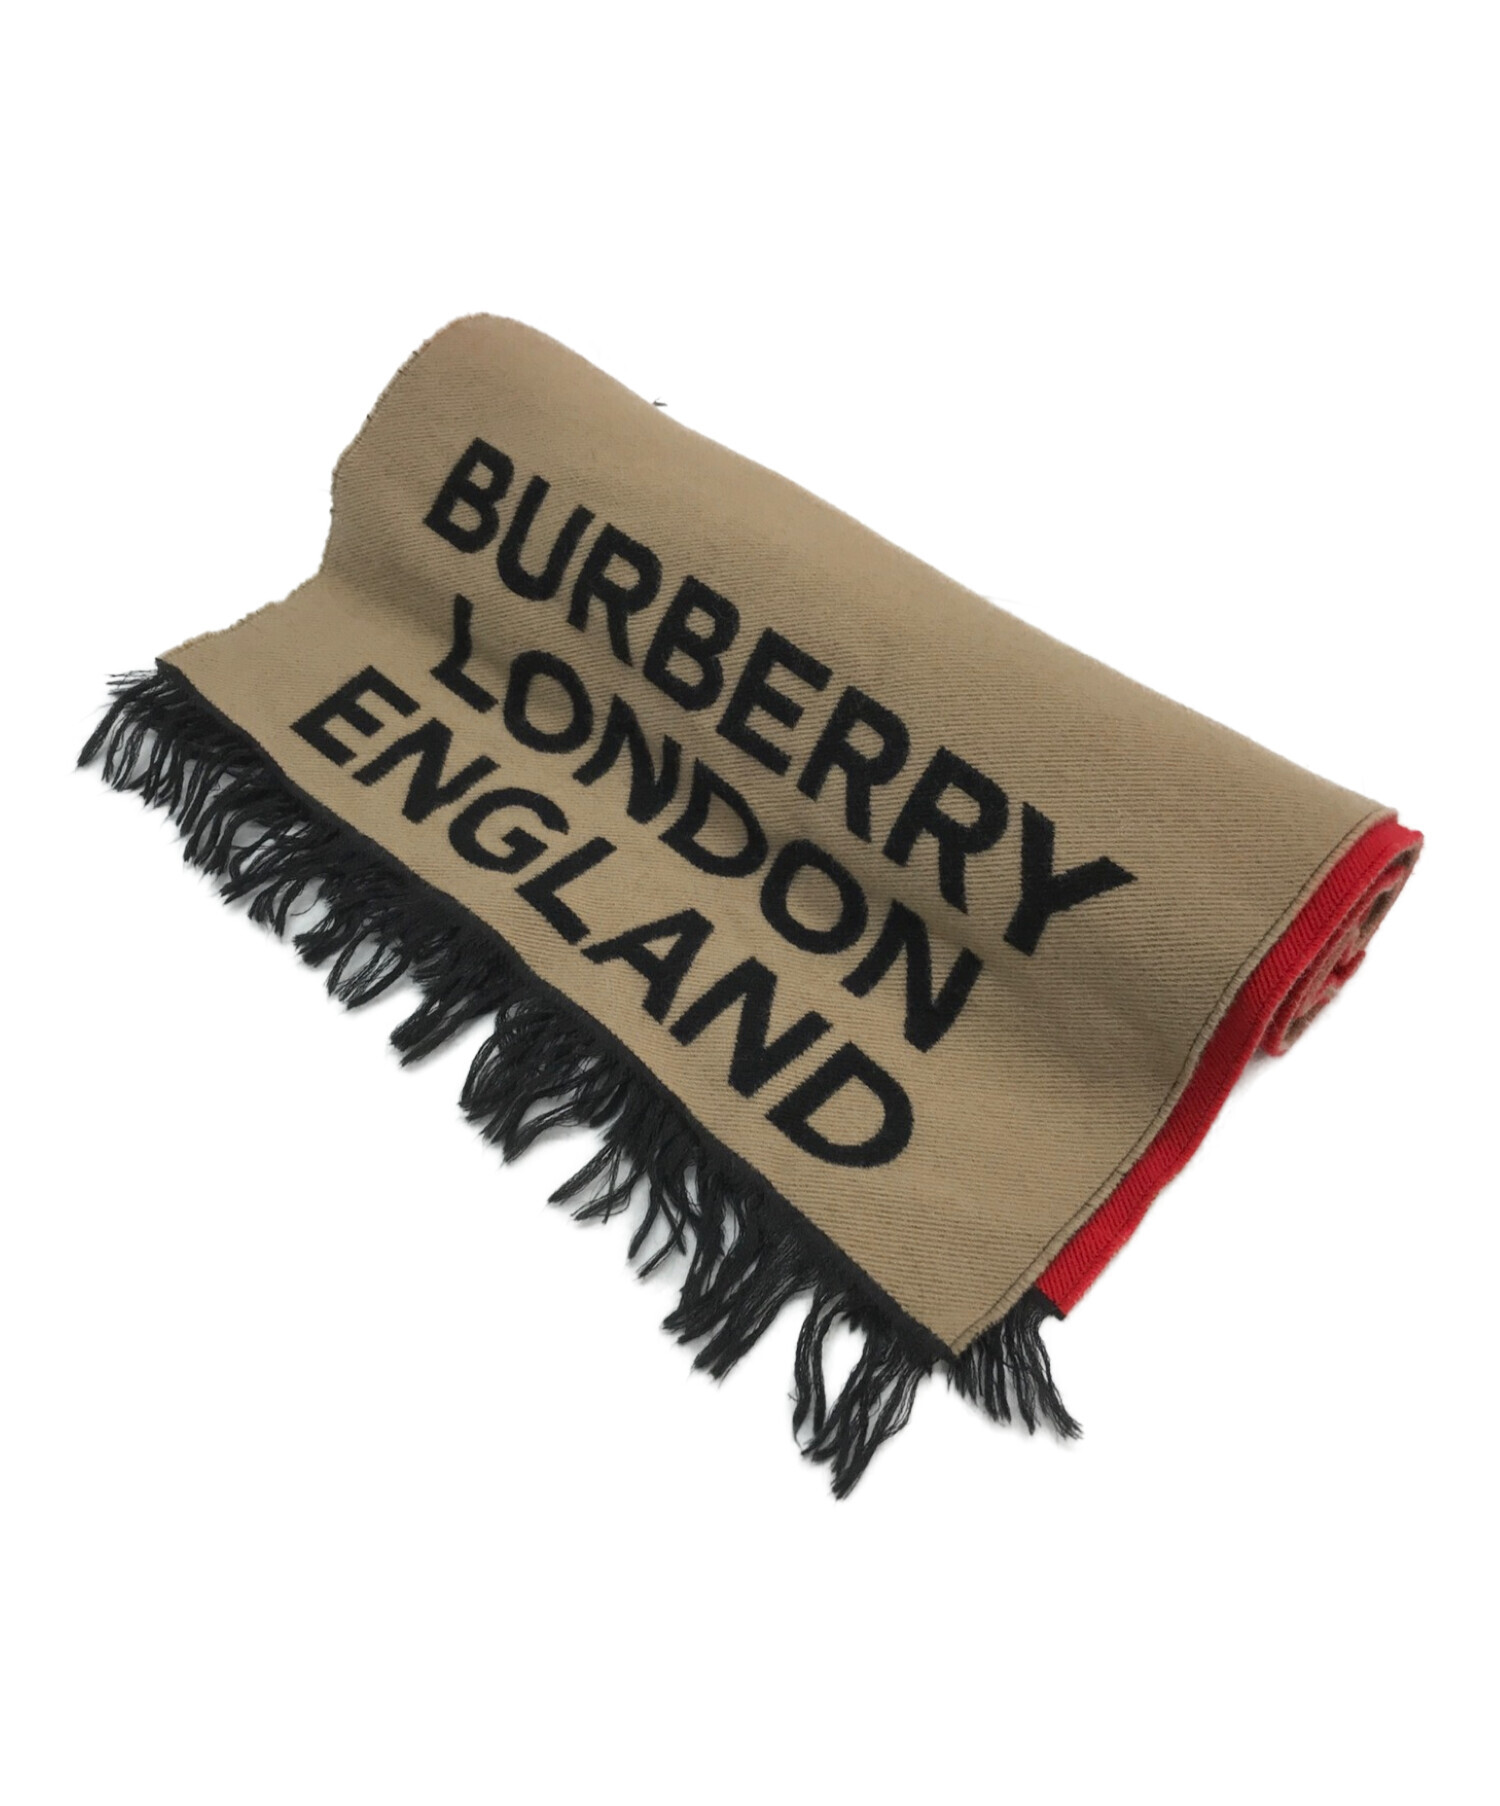 BURBERRY LONDON (バーバリーロンドン) LOVE FOOTBALL SCARF / カシミア混ウールマフラー レッド×ベージュ